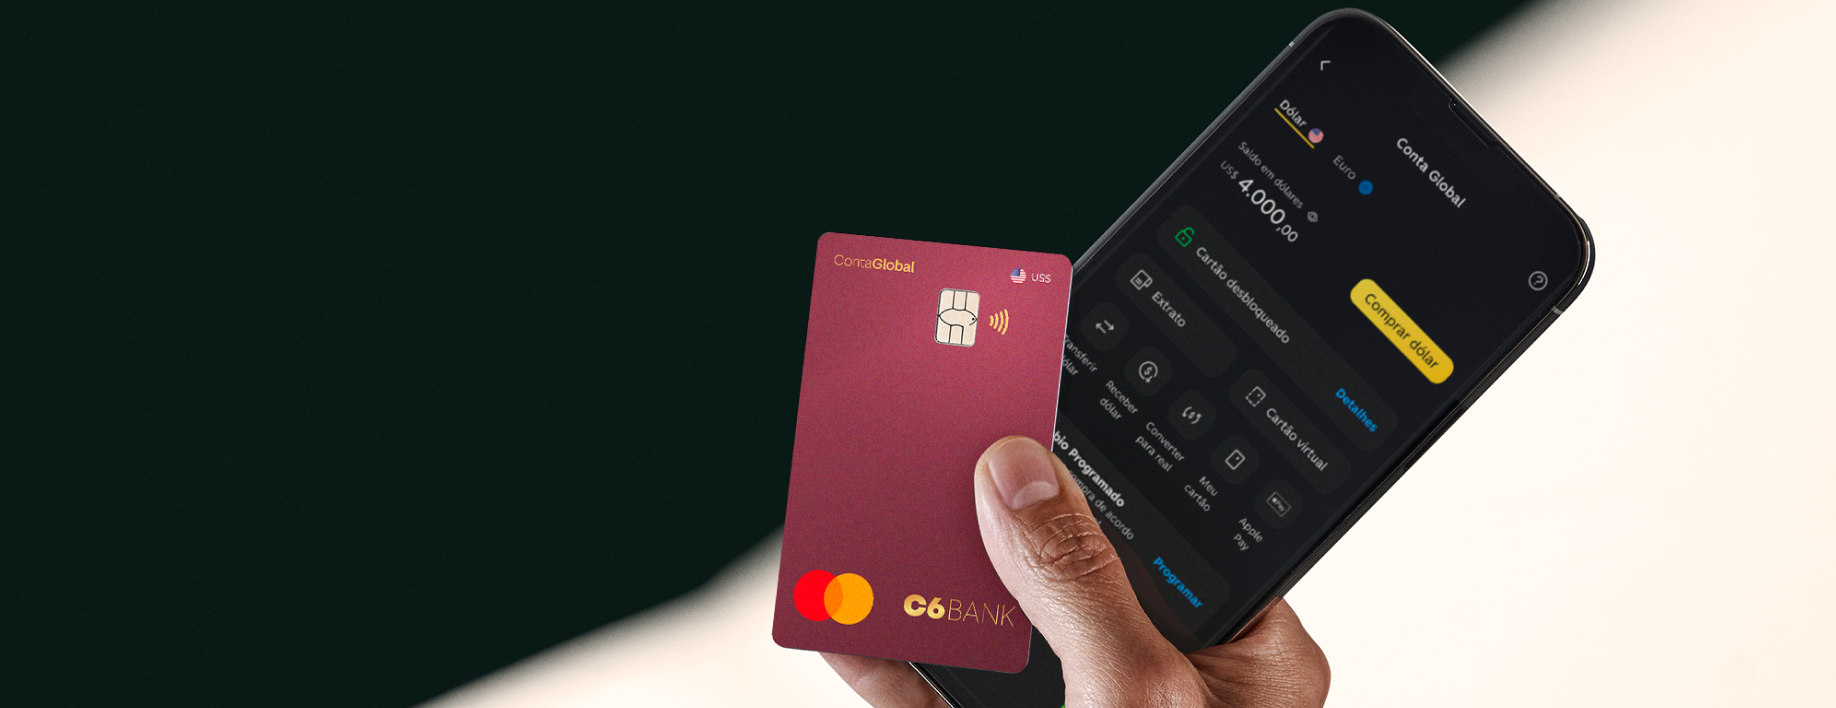 Foto de uma mão direita segurando um celular com app C6 Bank aberto na tela de Conta Global e um Cartão de Débito Internacional vinho